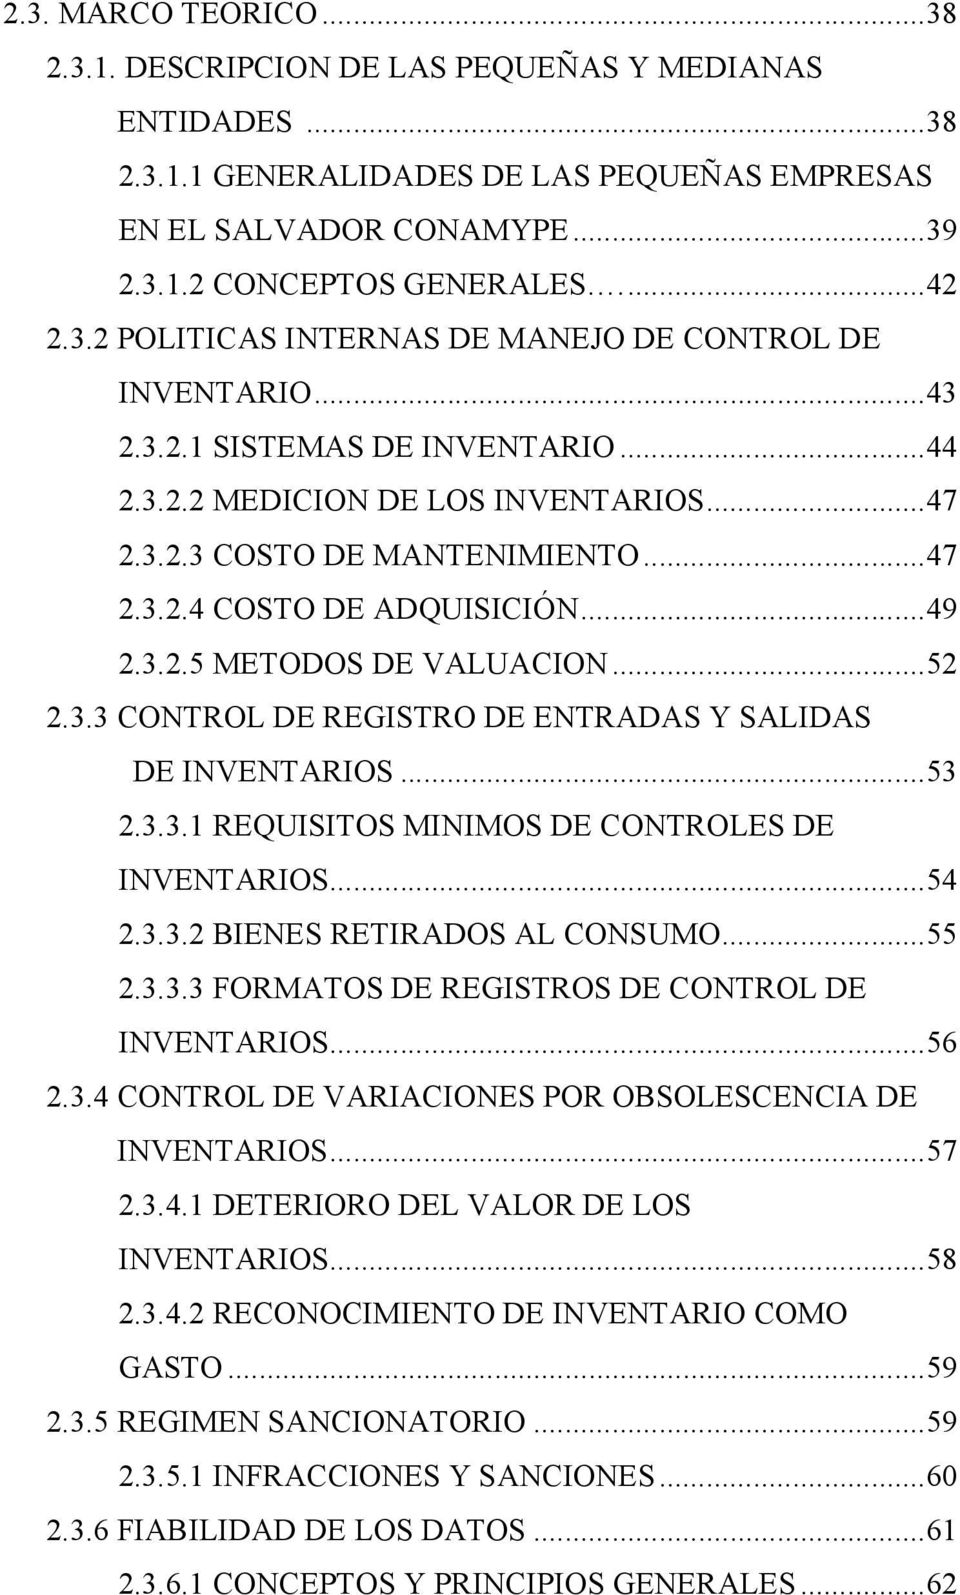 .. 49 2.3.2.5 METODOS DE VALUACION... 52 2.3.3 CONTROL DE REGISTRO DE ENTRADAS Y SALIDAS DE INVENTARIOS... 53 2.3.3.1 REQUISITOS MINIMOS DE CONTROLES DE INVENTARIOS... 54 2.3.3.2 BIENES RETIRADOS AL CONSUMO.